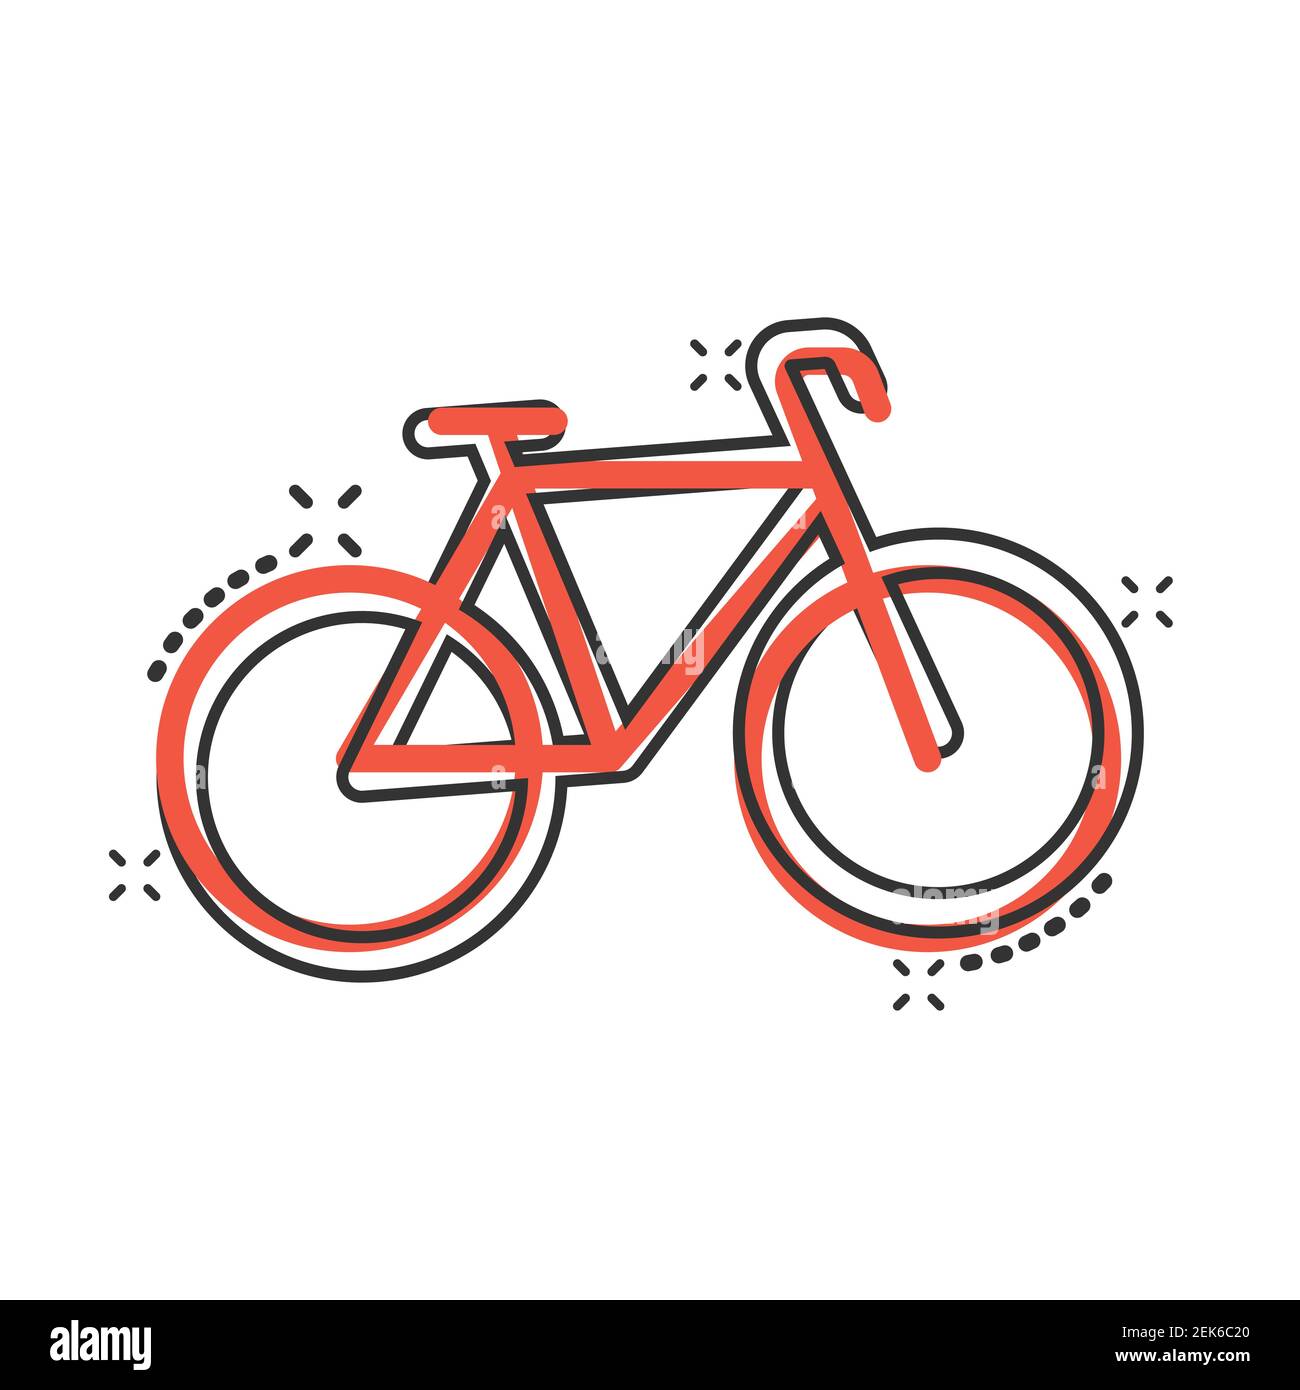 Fahrrad-Ikone im Comic-Stil. Fahrrad Cartoon Vektor-Illustration auf weißem  Hintergrund isoliert. Geschäftskonzept mit Reisesplash-Effekt  Stock-Vektorgrafik - Alamy